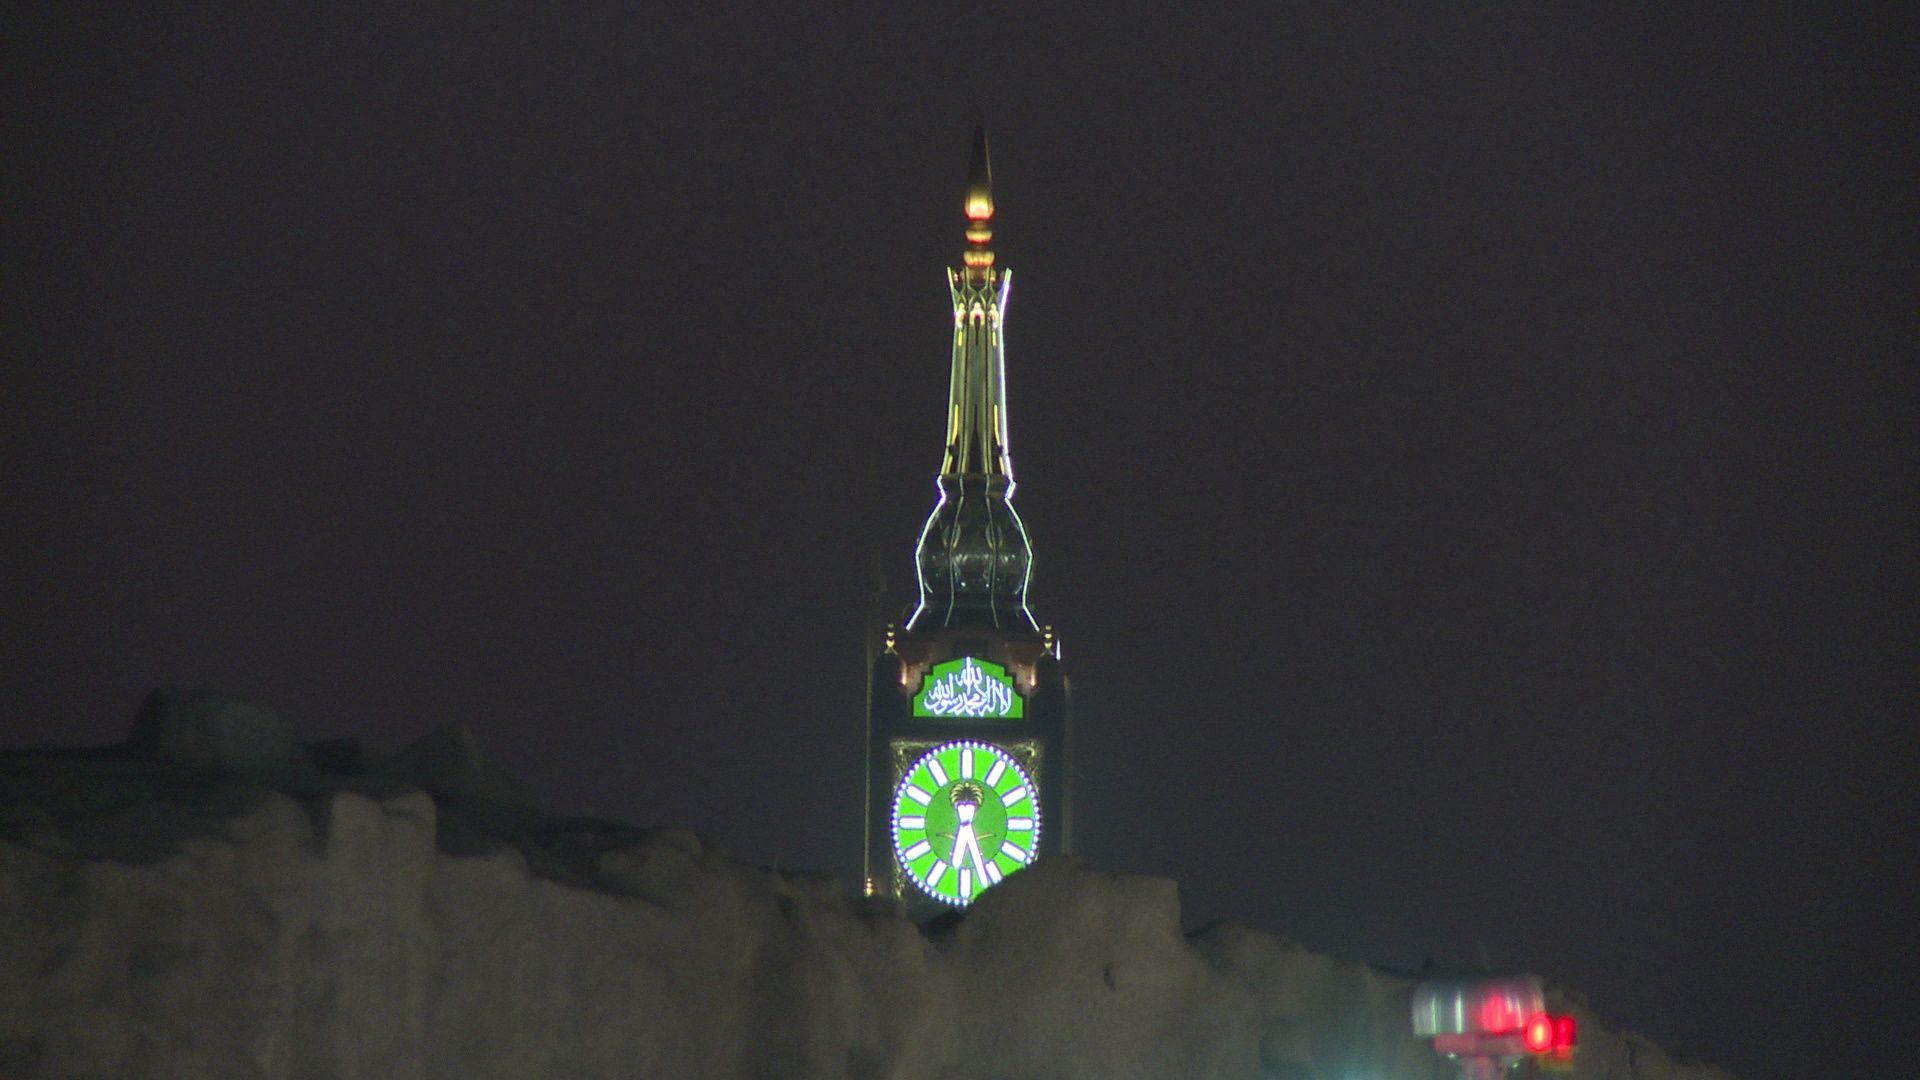 Video: Makkah Royal Clock Tower as seen from Mina, Saudi Arabia